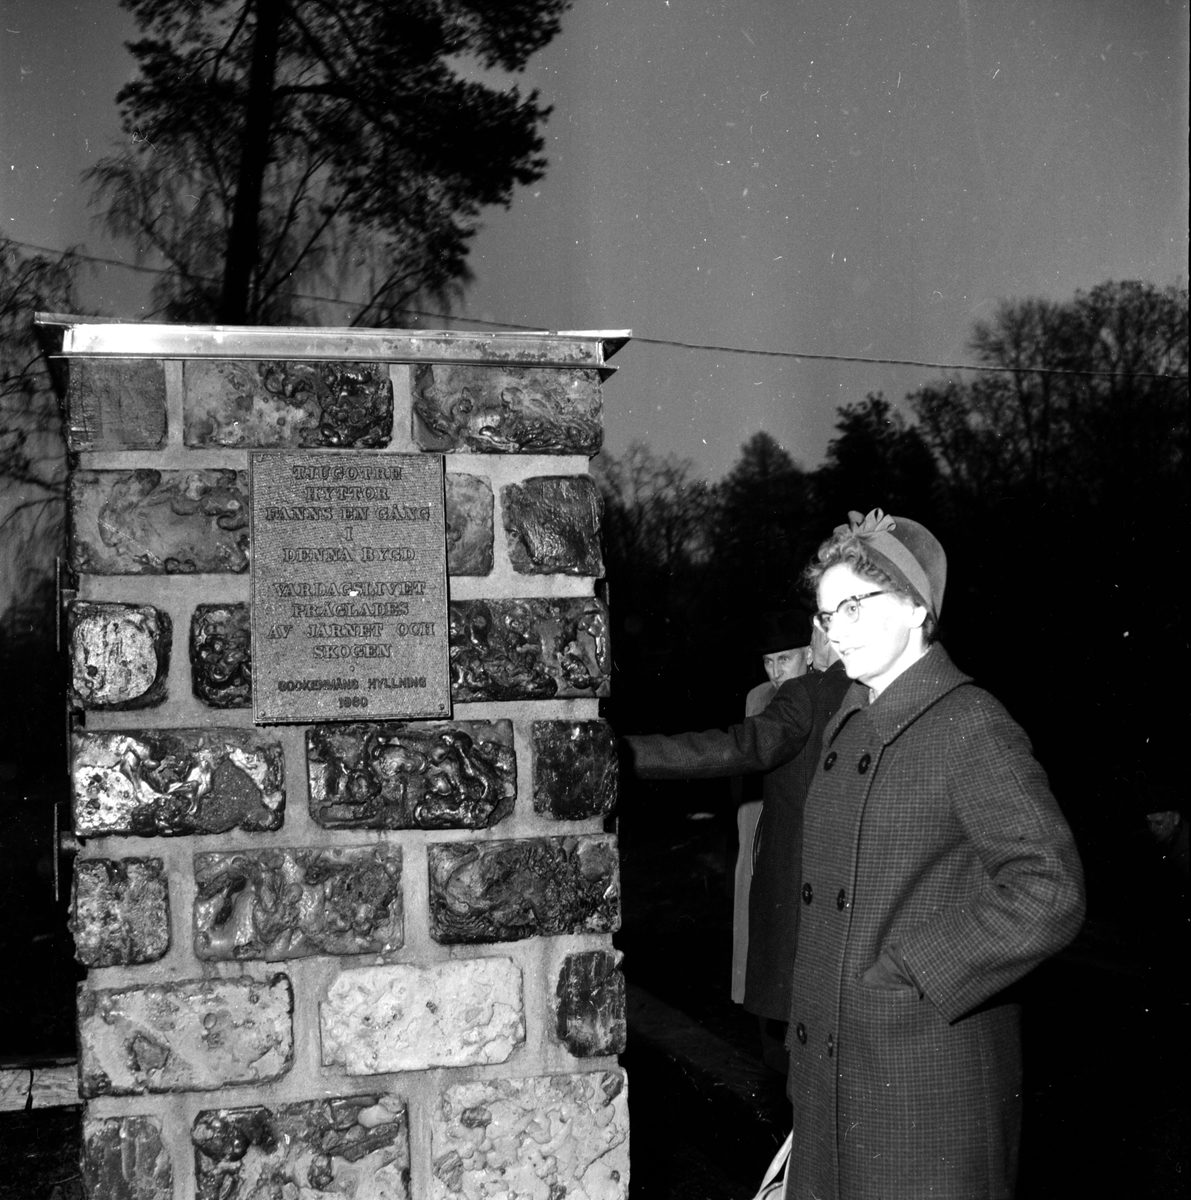 Kratten.Invigning av bioteknologiska.
18/11-1960